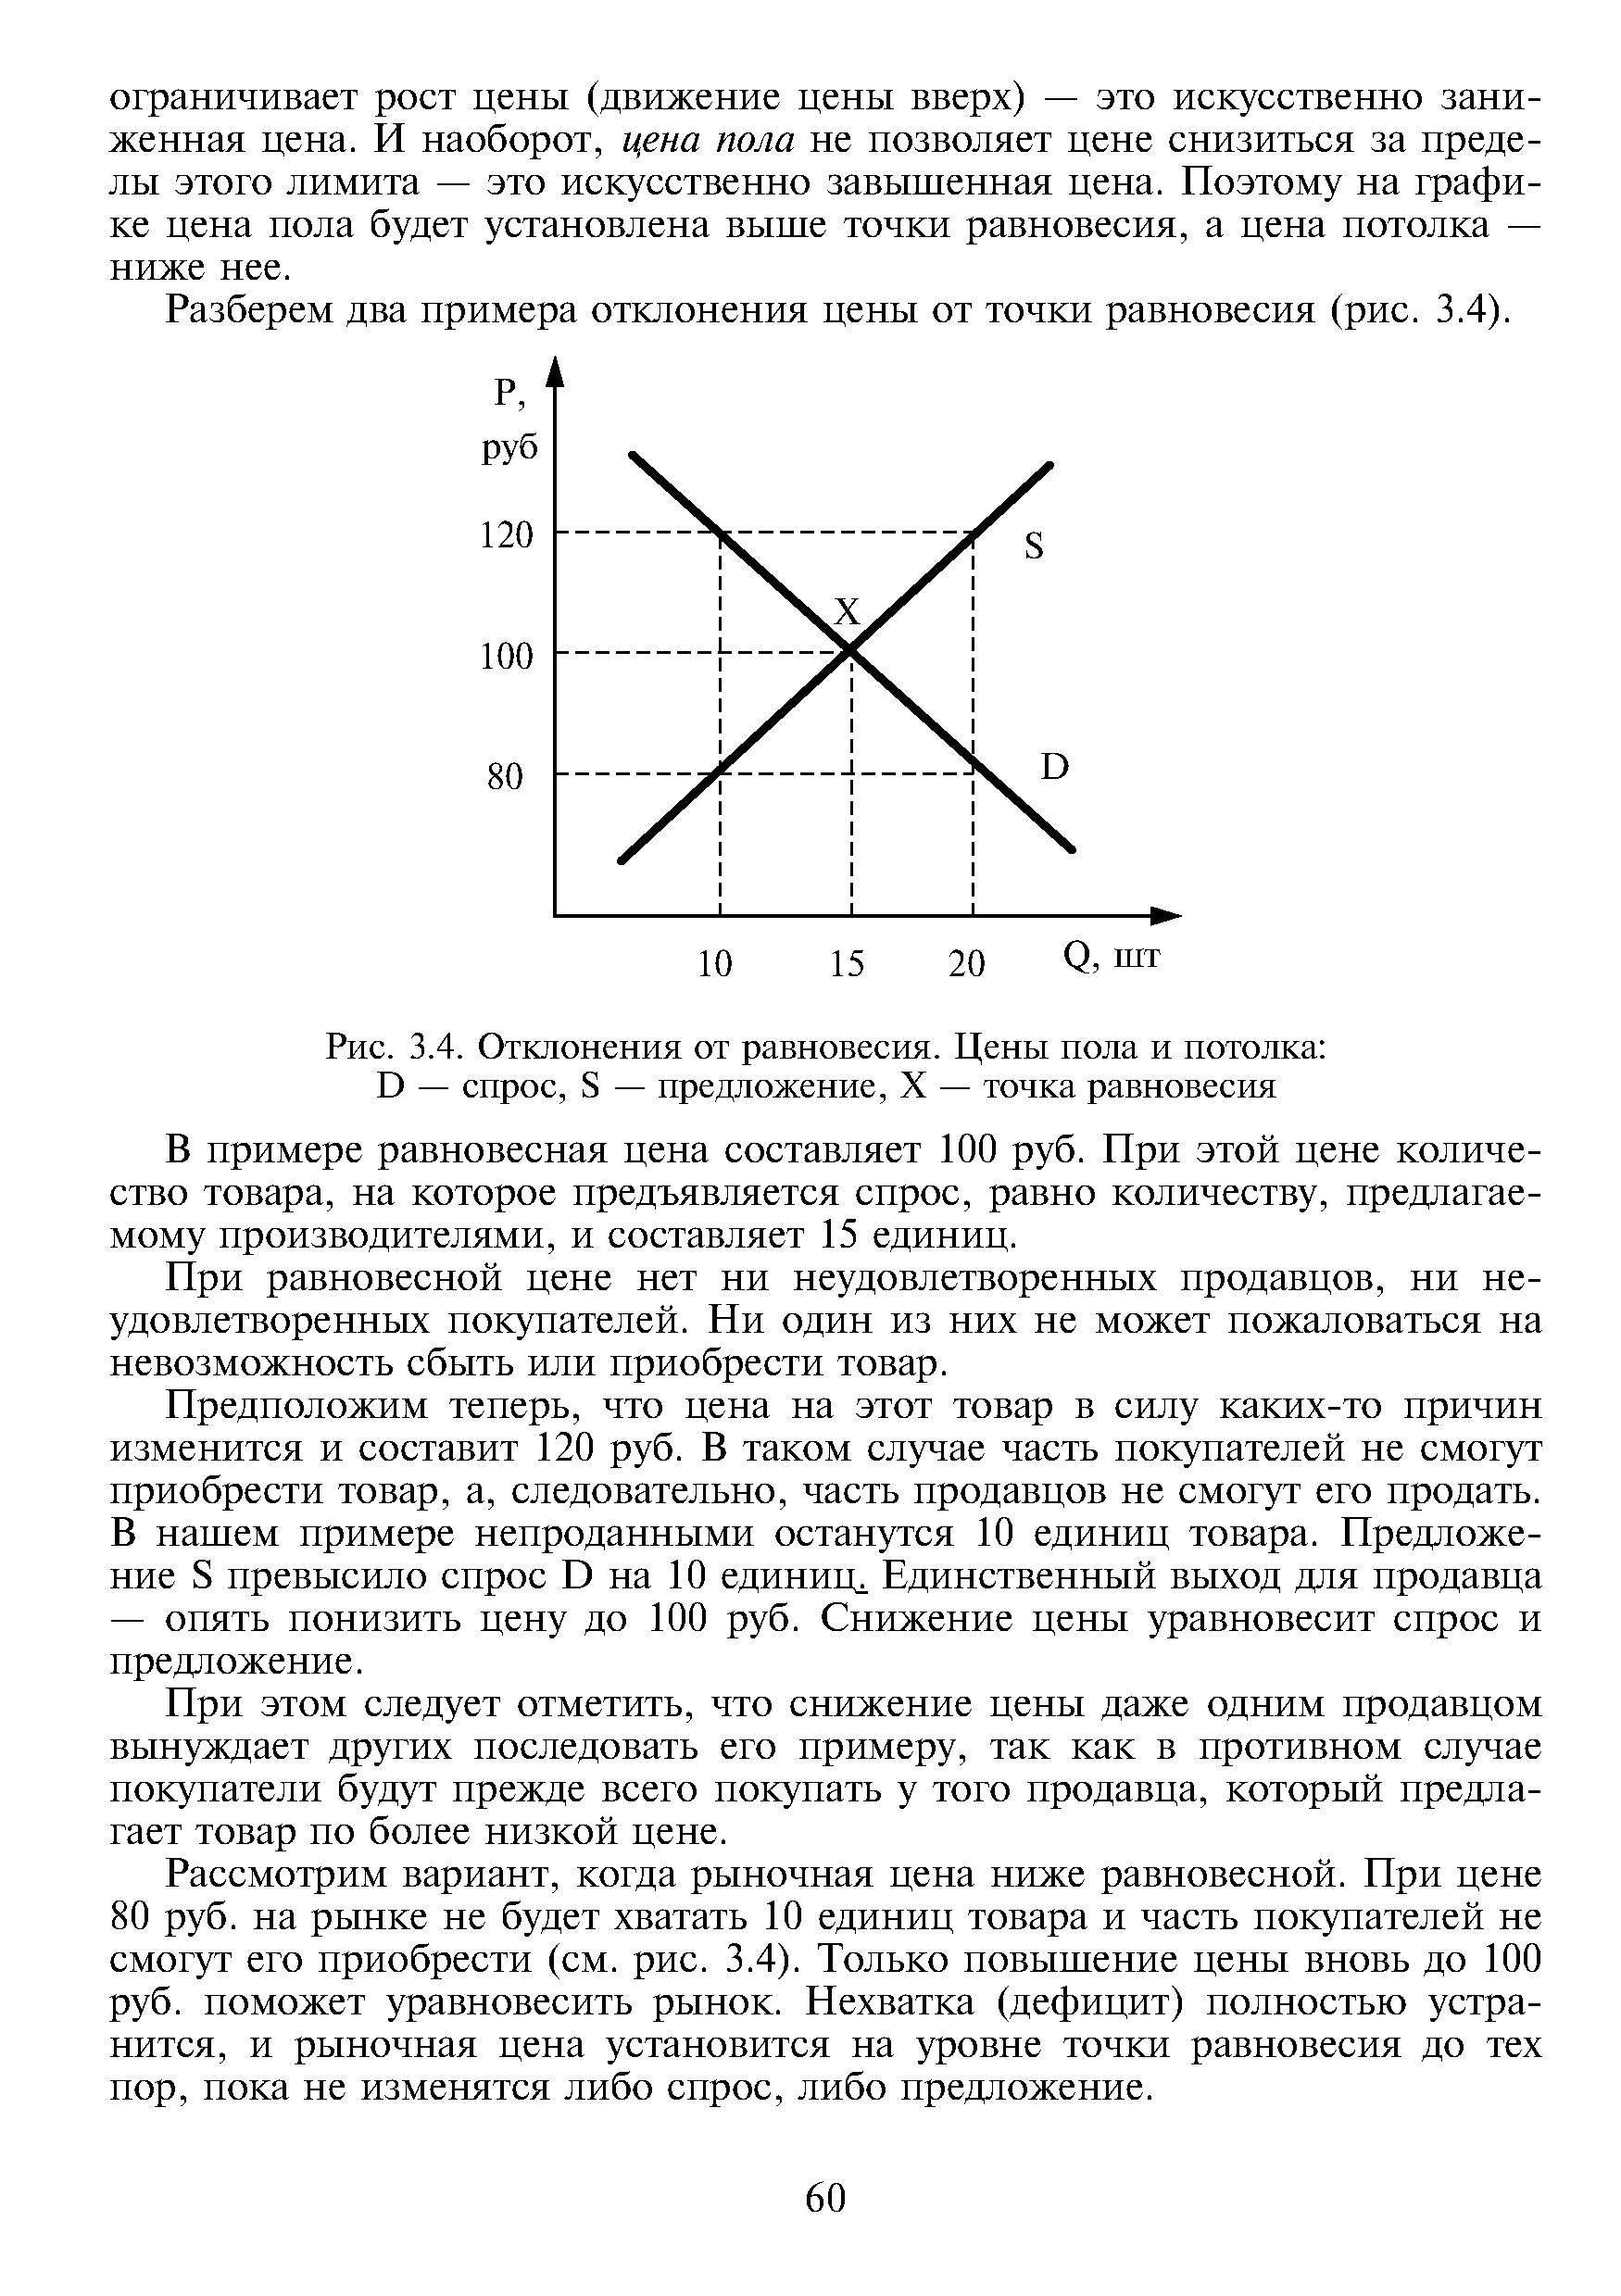 Рис. 3.4. Отклонения от равновесия. Цены пола и потолка D — спрос, S — предложение, X — точка равновесия
